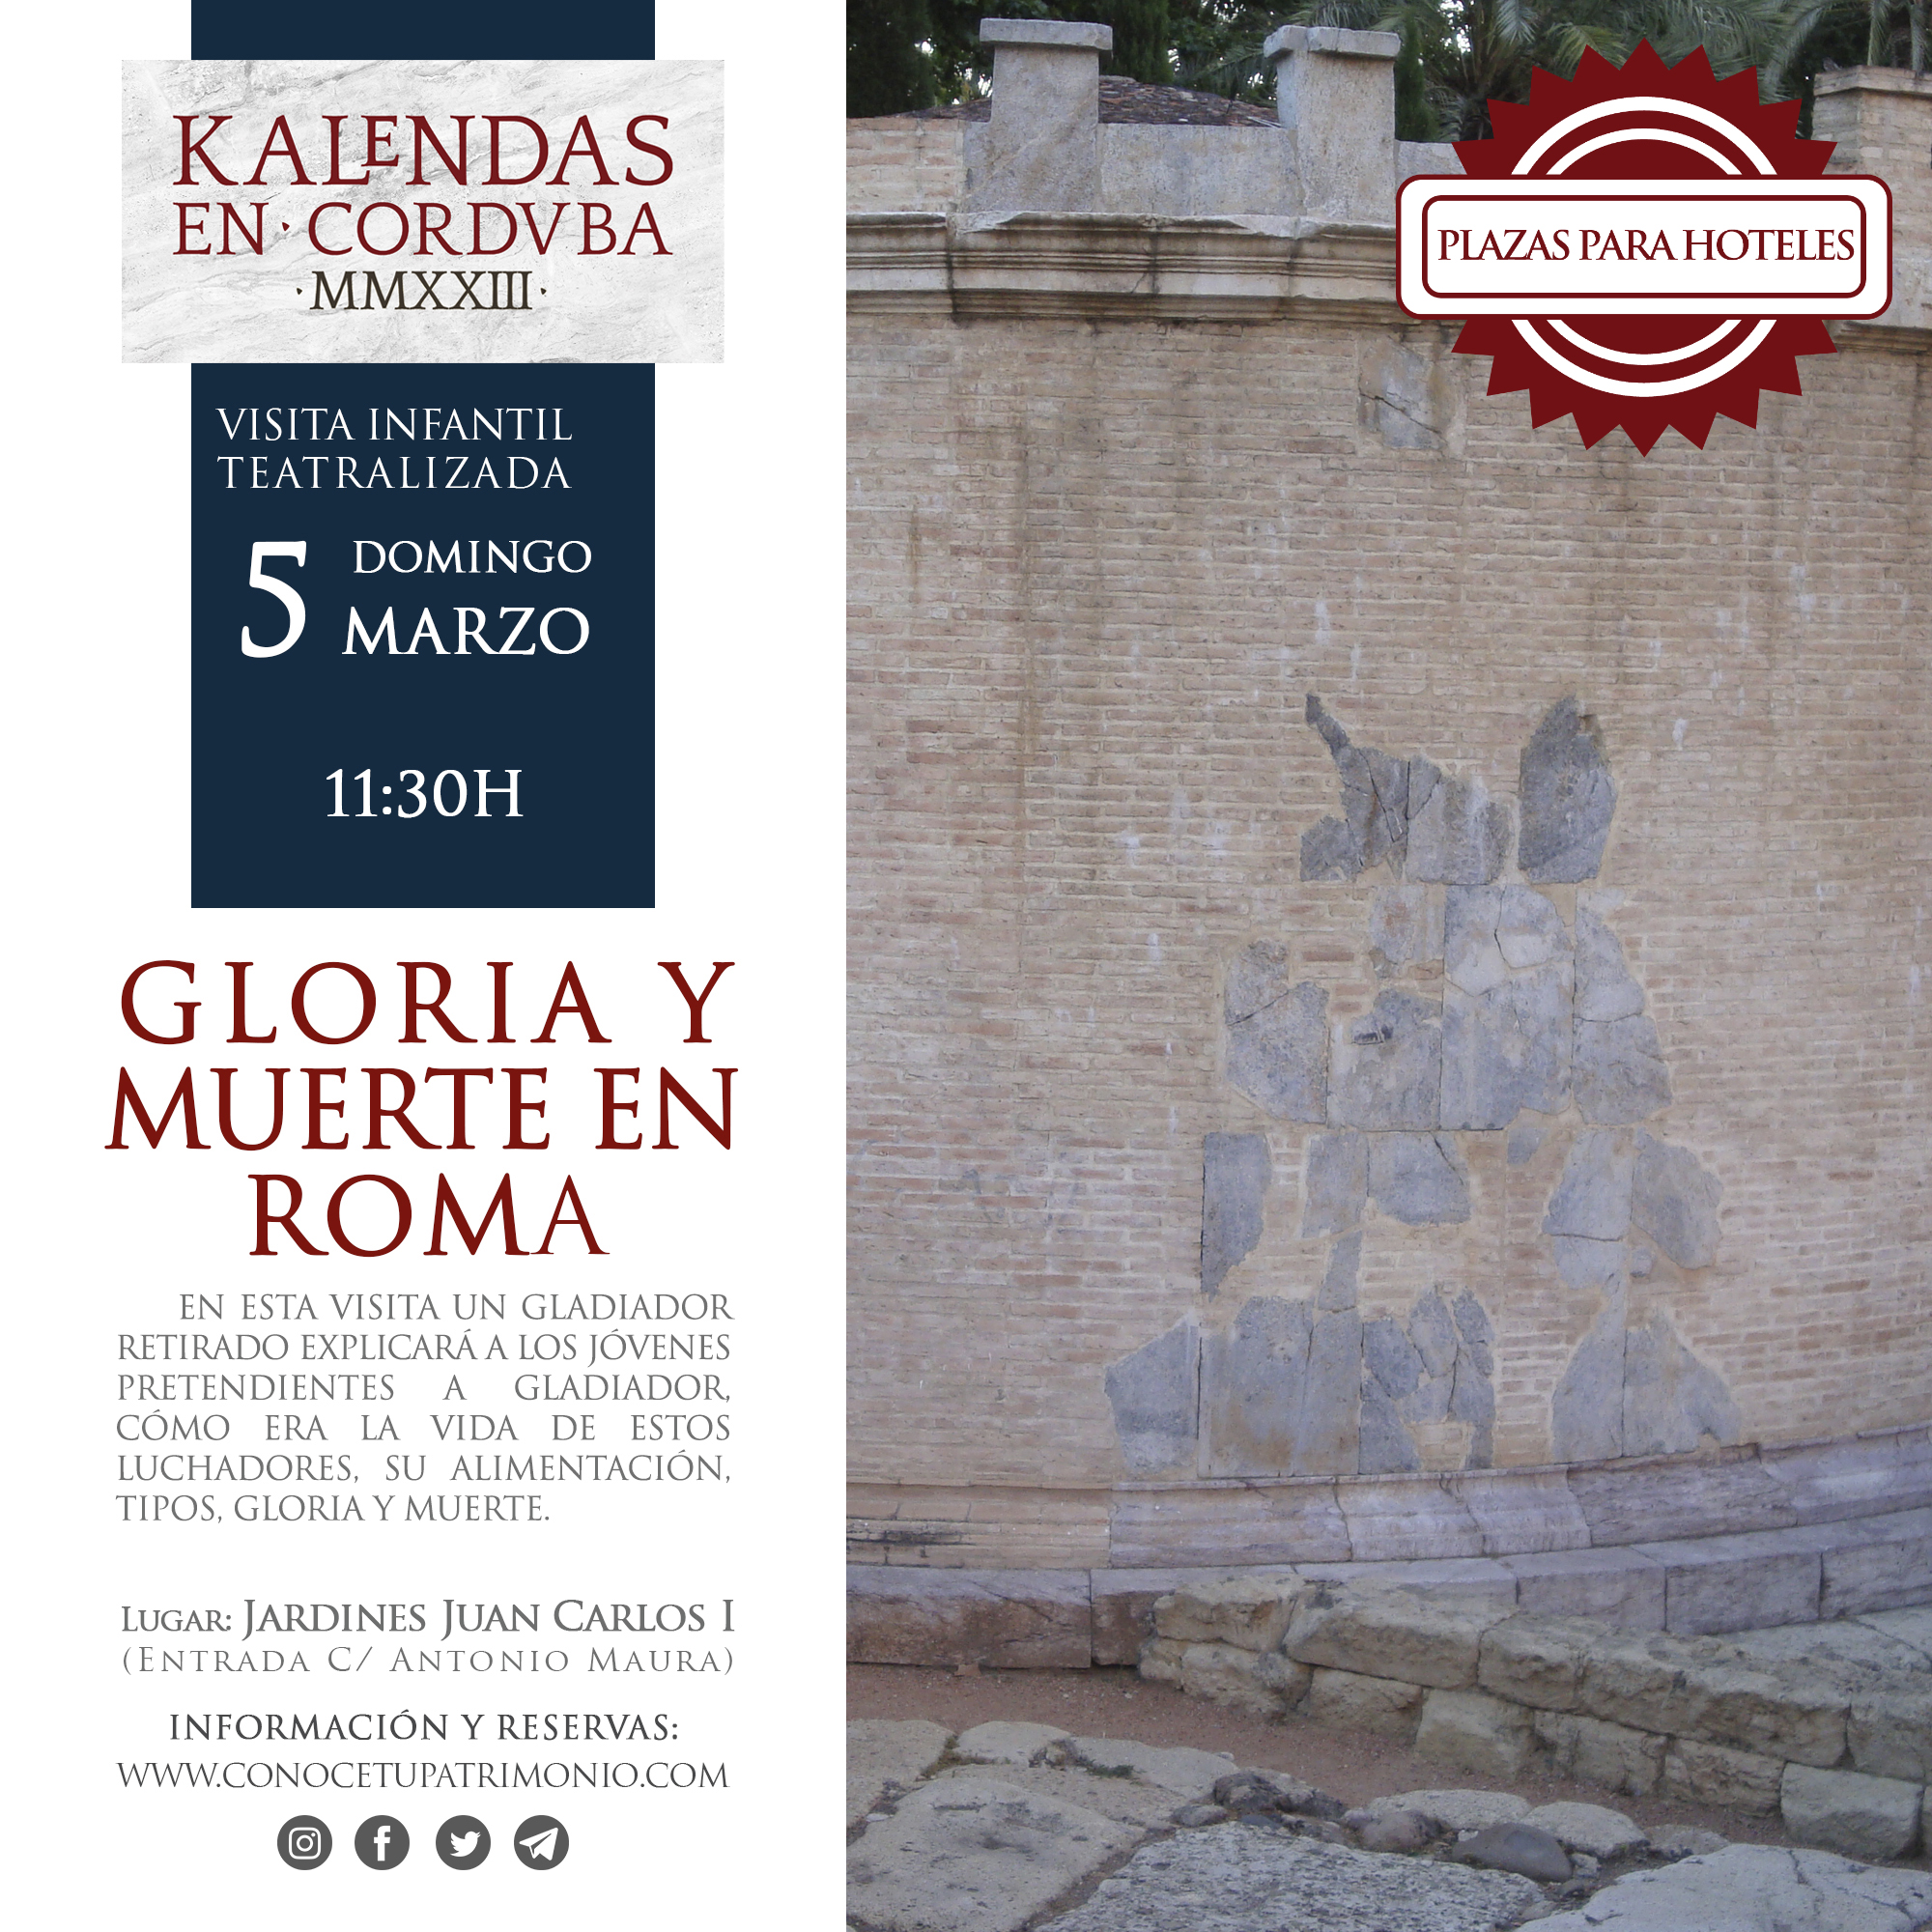 Hotel -  Visita teatralizada infantil - Gloria y muerte en Roma - 5 marzo - 11:30 h.